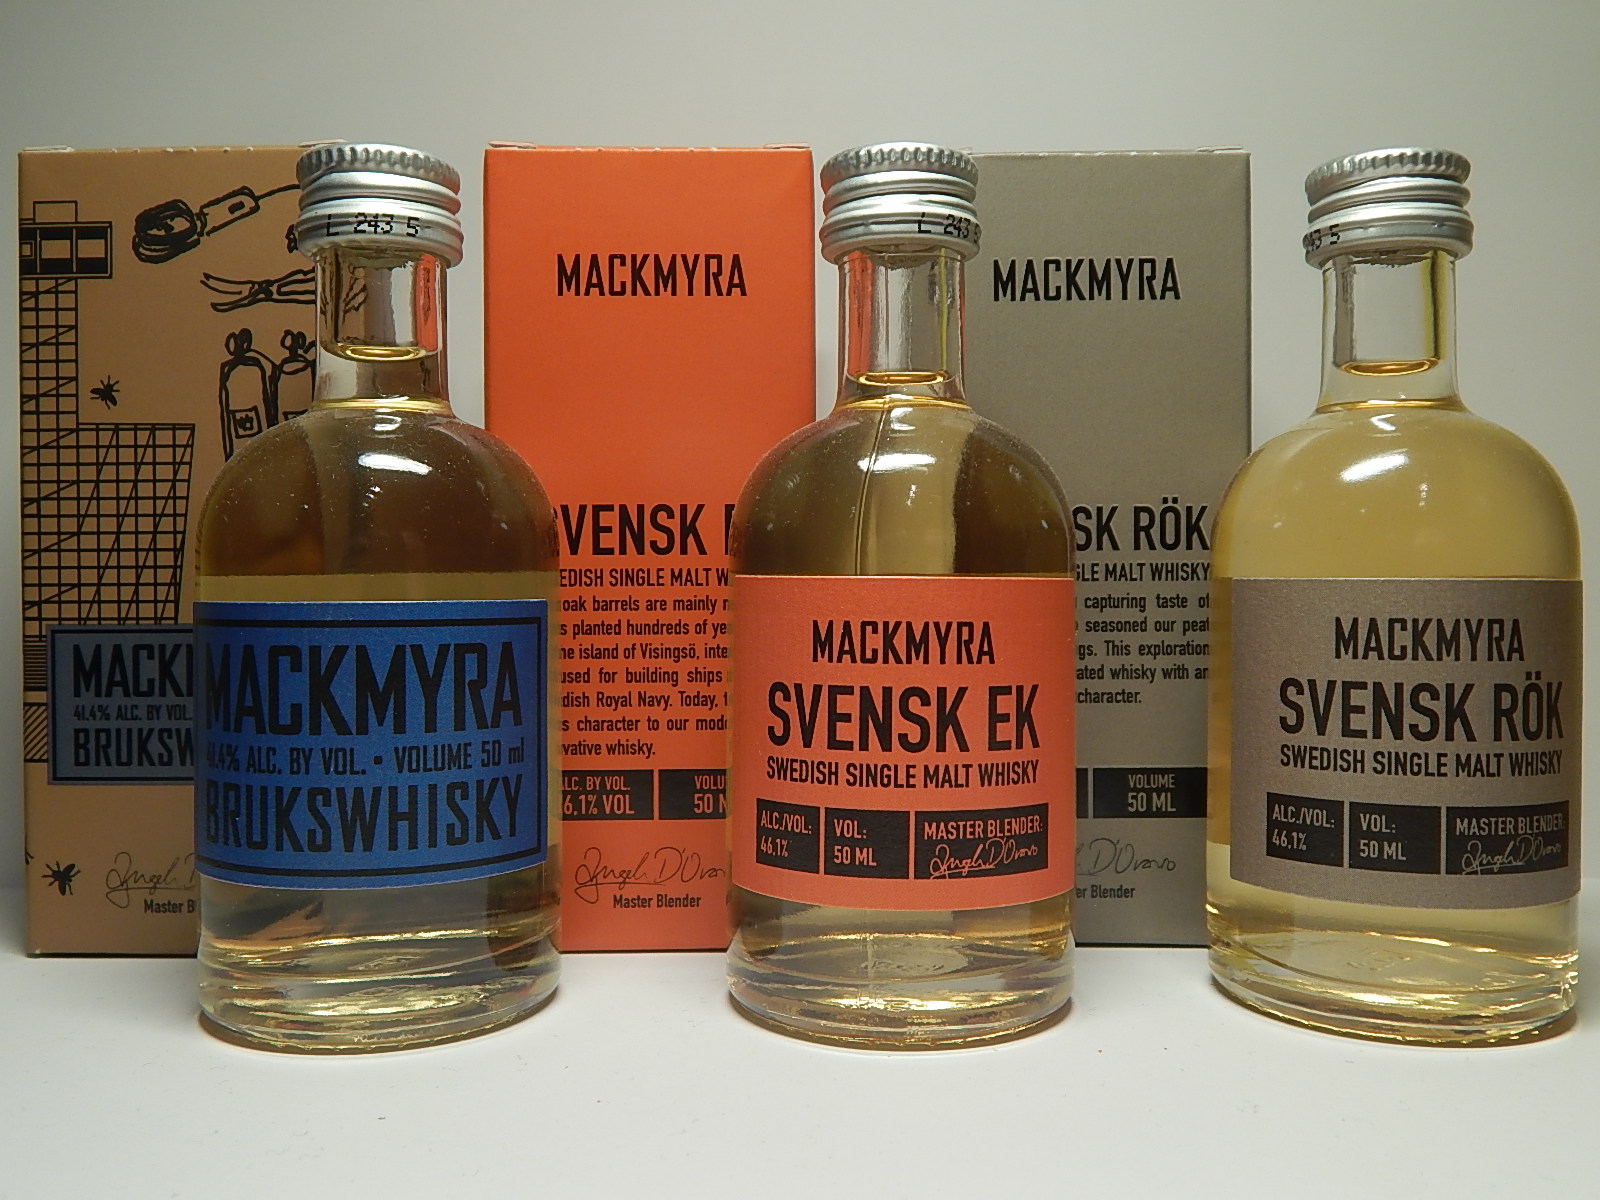 MACKMYRA Swedish Malt Whisky